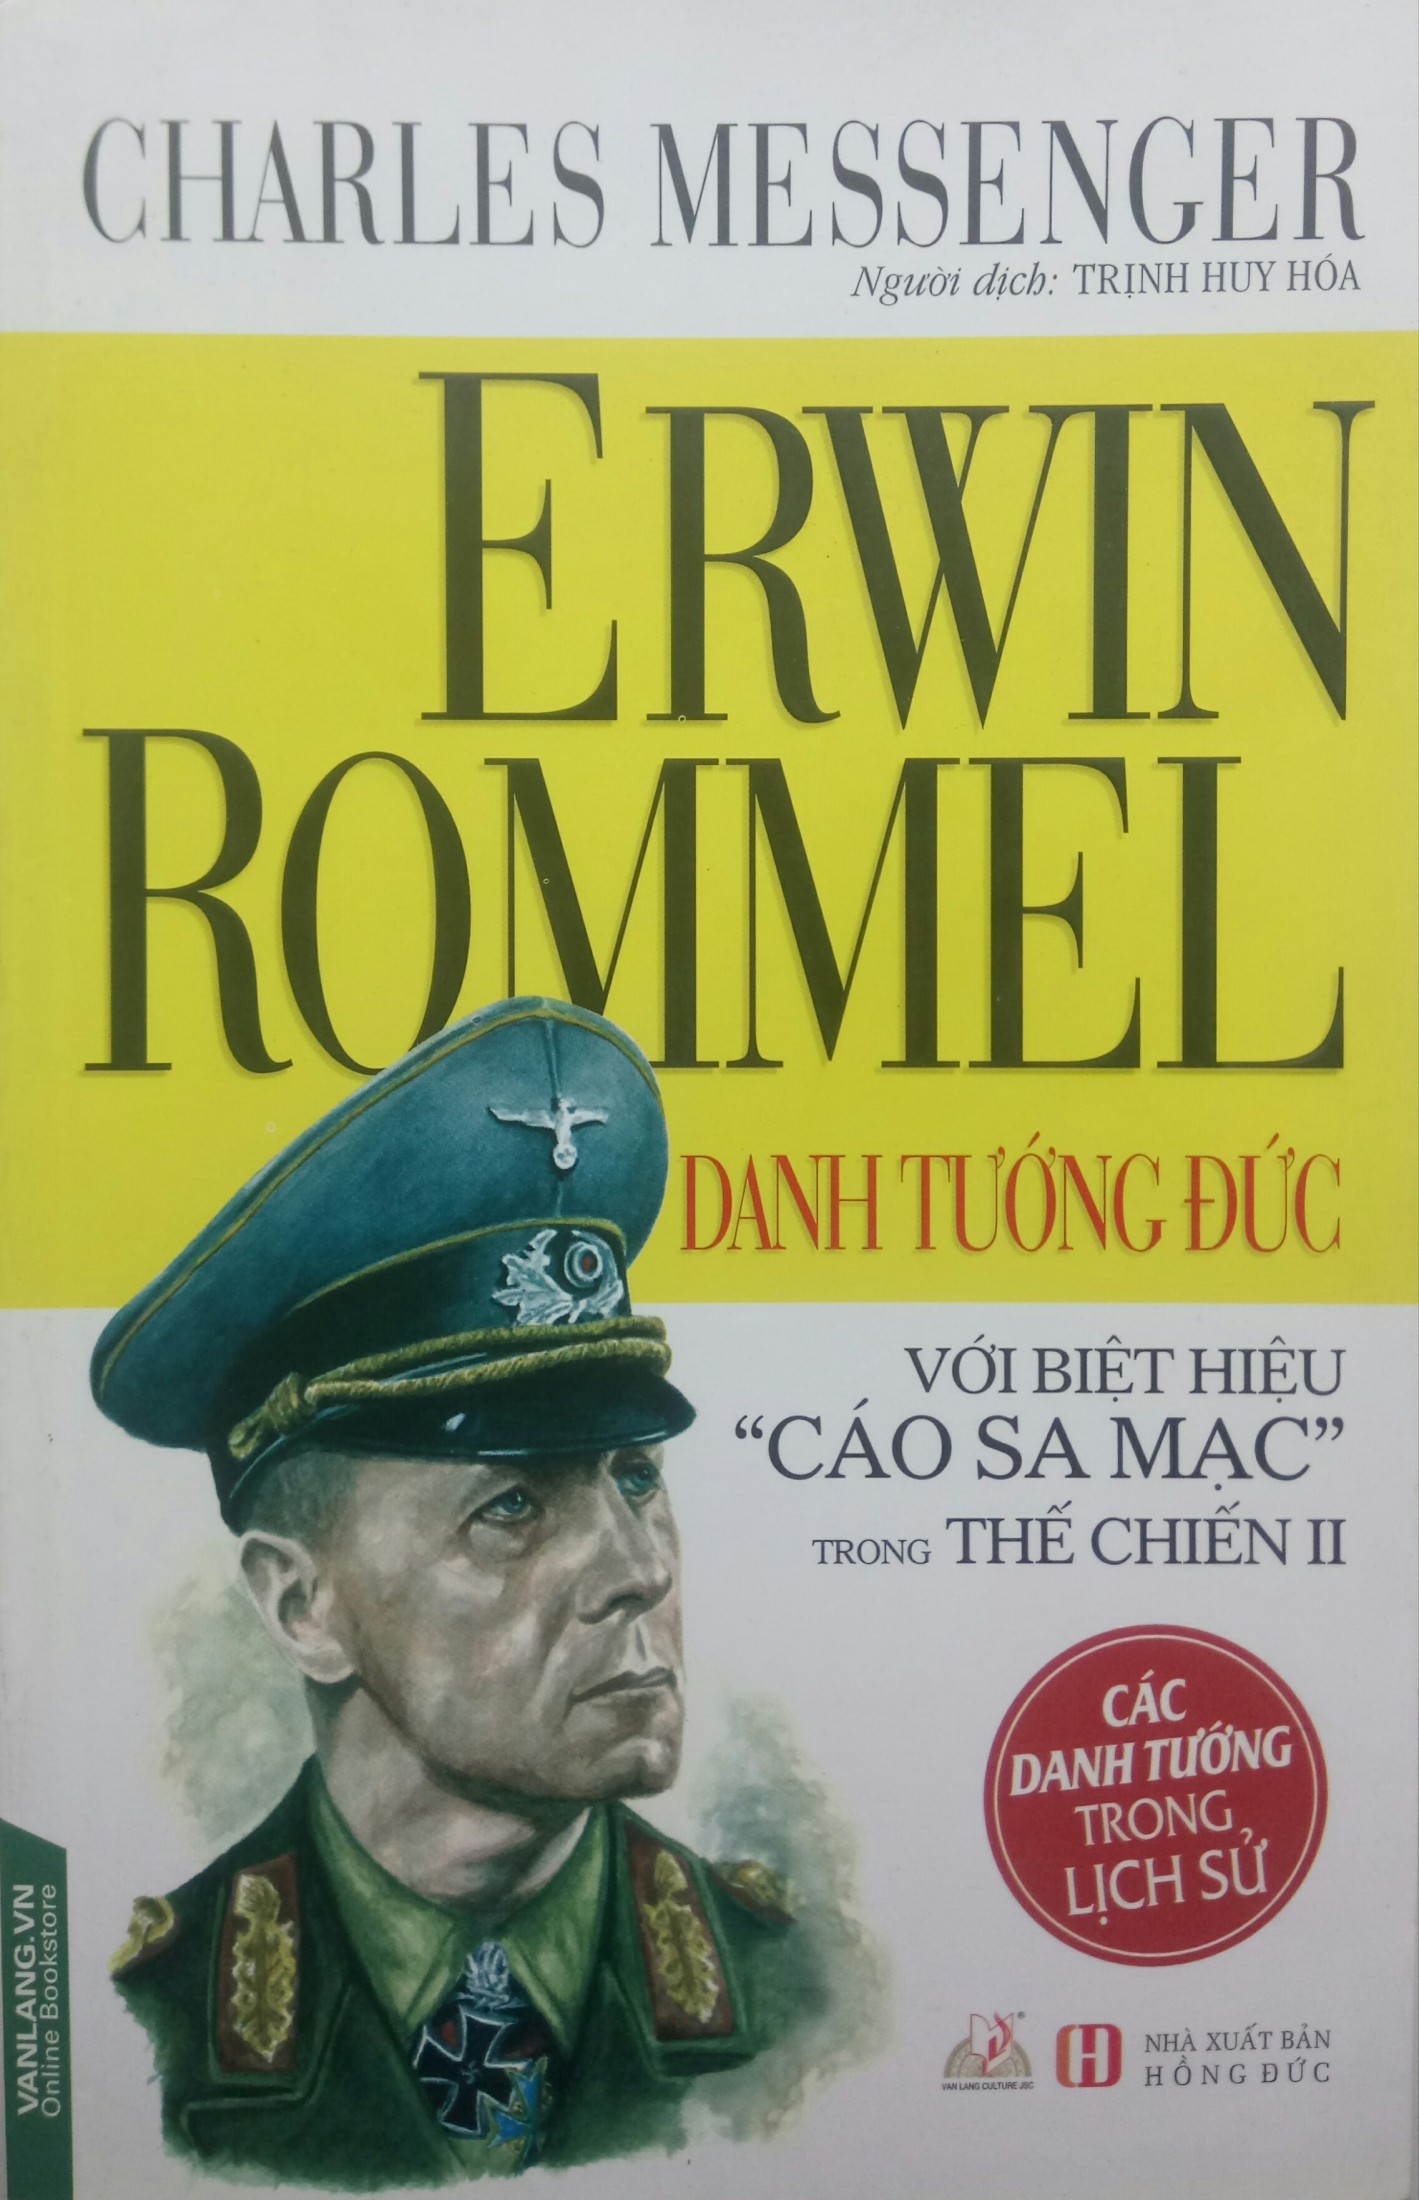 Erwin Rommel Danh Tướng Đức Với Biệt Hiệu Cáo Sa Mạc trong Thế chiến II - Charles Messenger